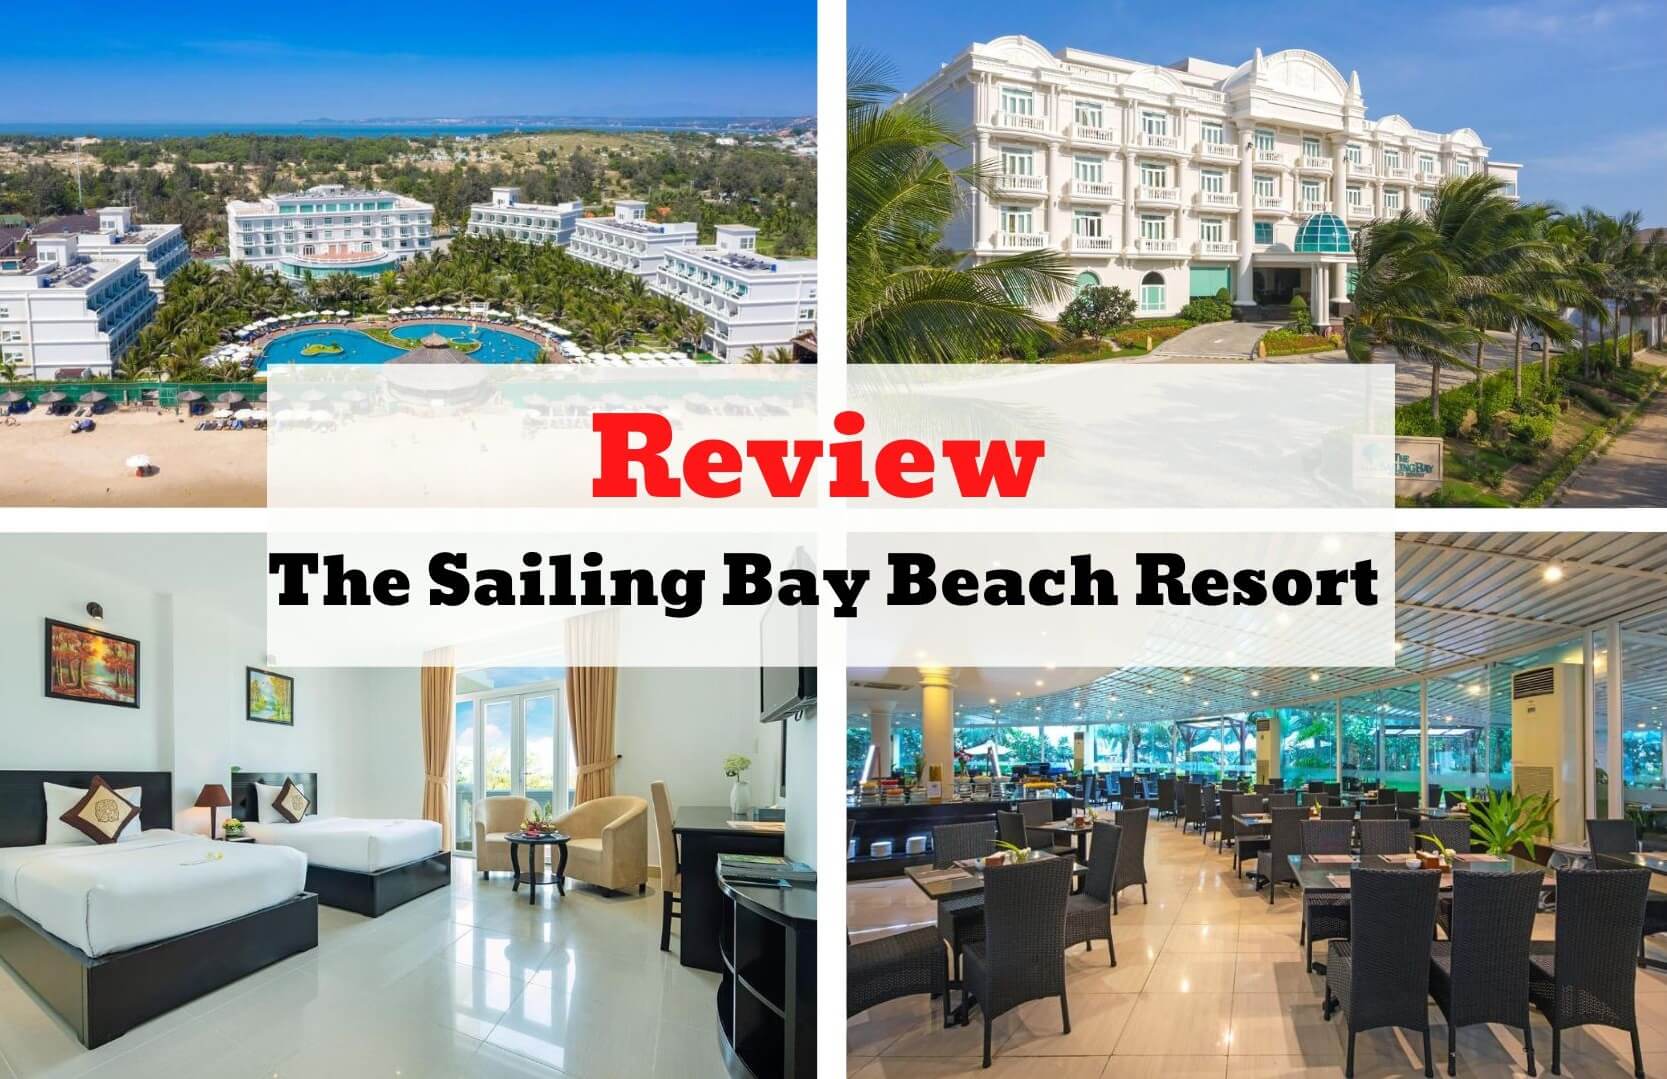 Review The Sailing Bay Beach Resort - Bản giao hưởng giữa thiên nhiên và kiến trúc hiện đại